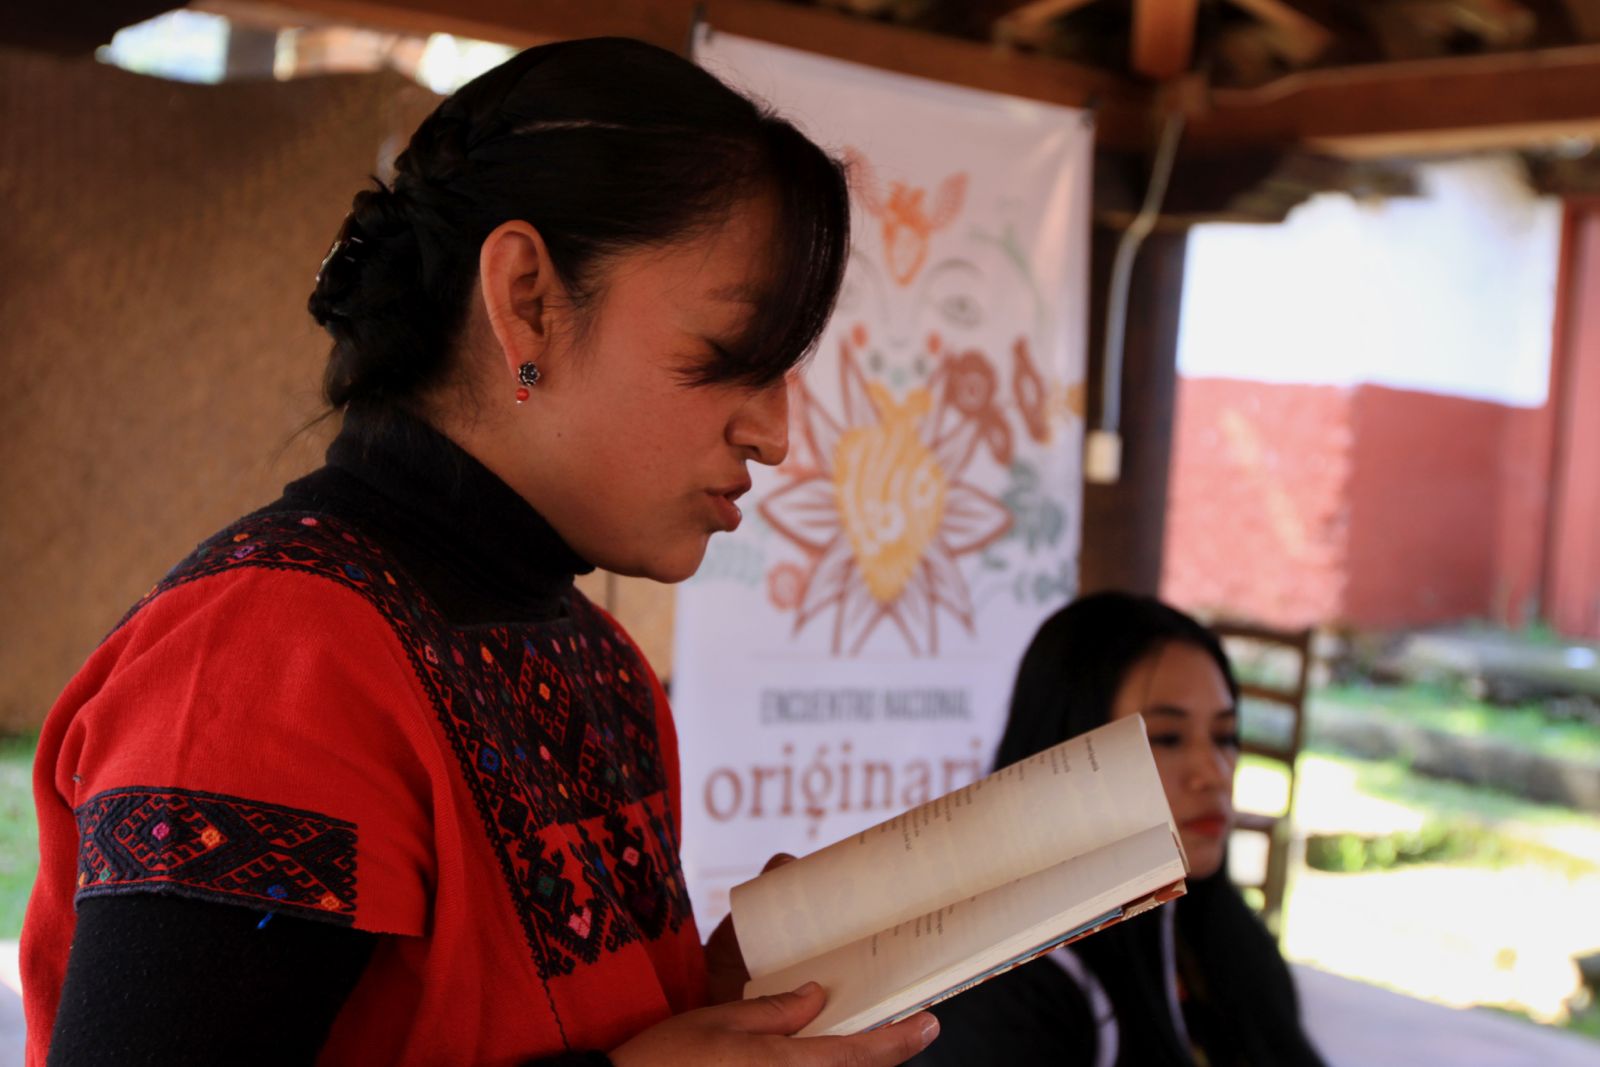 El Segundo Encuentro “Originaria: Mujeres que escriben fuera de la hegemonía” llegará a Pátzcuaro este mes